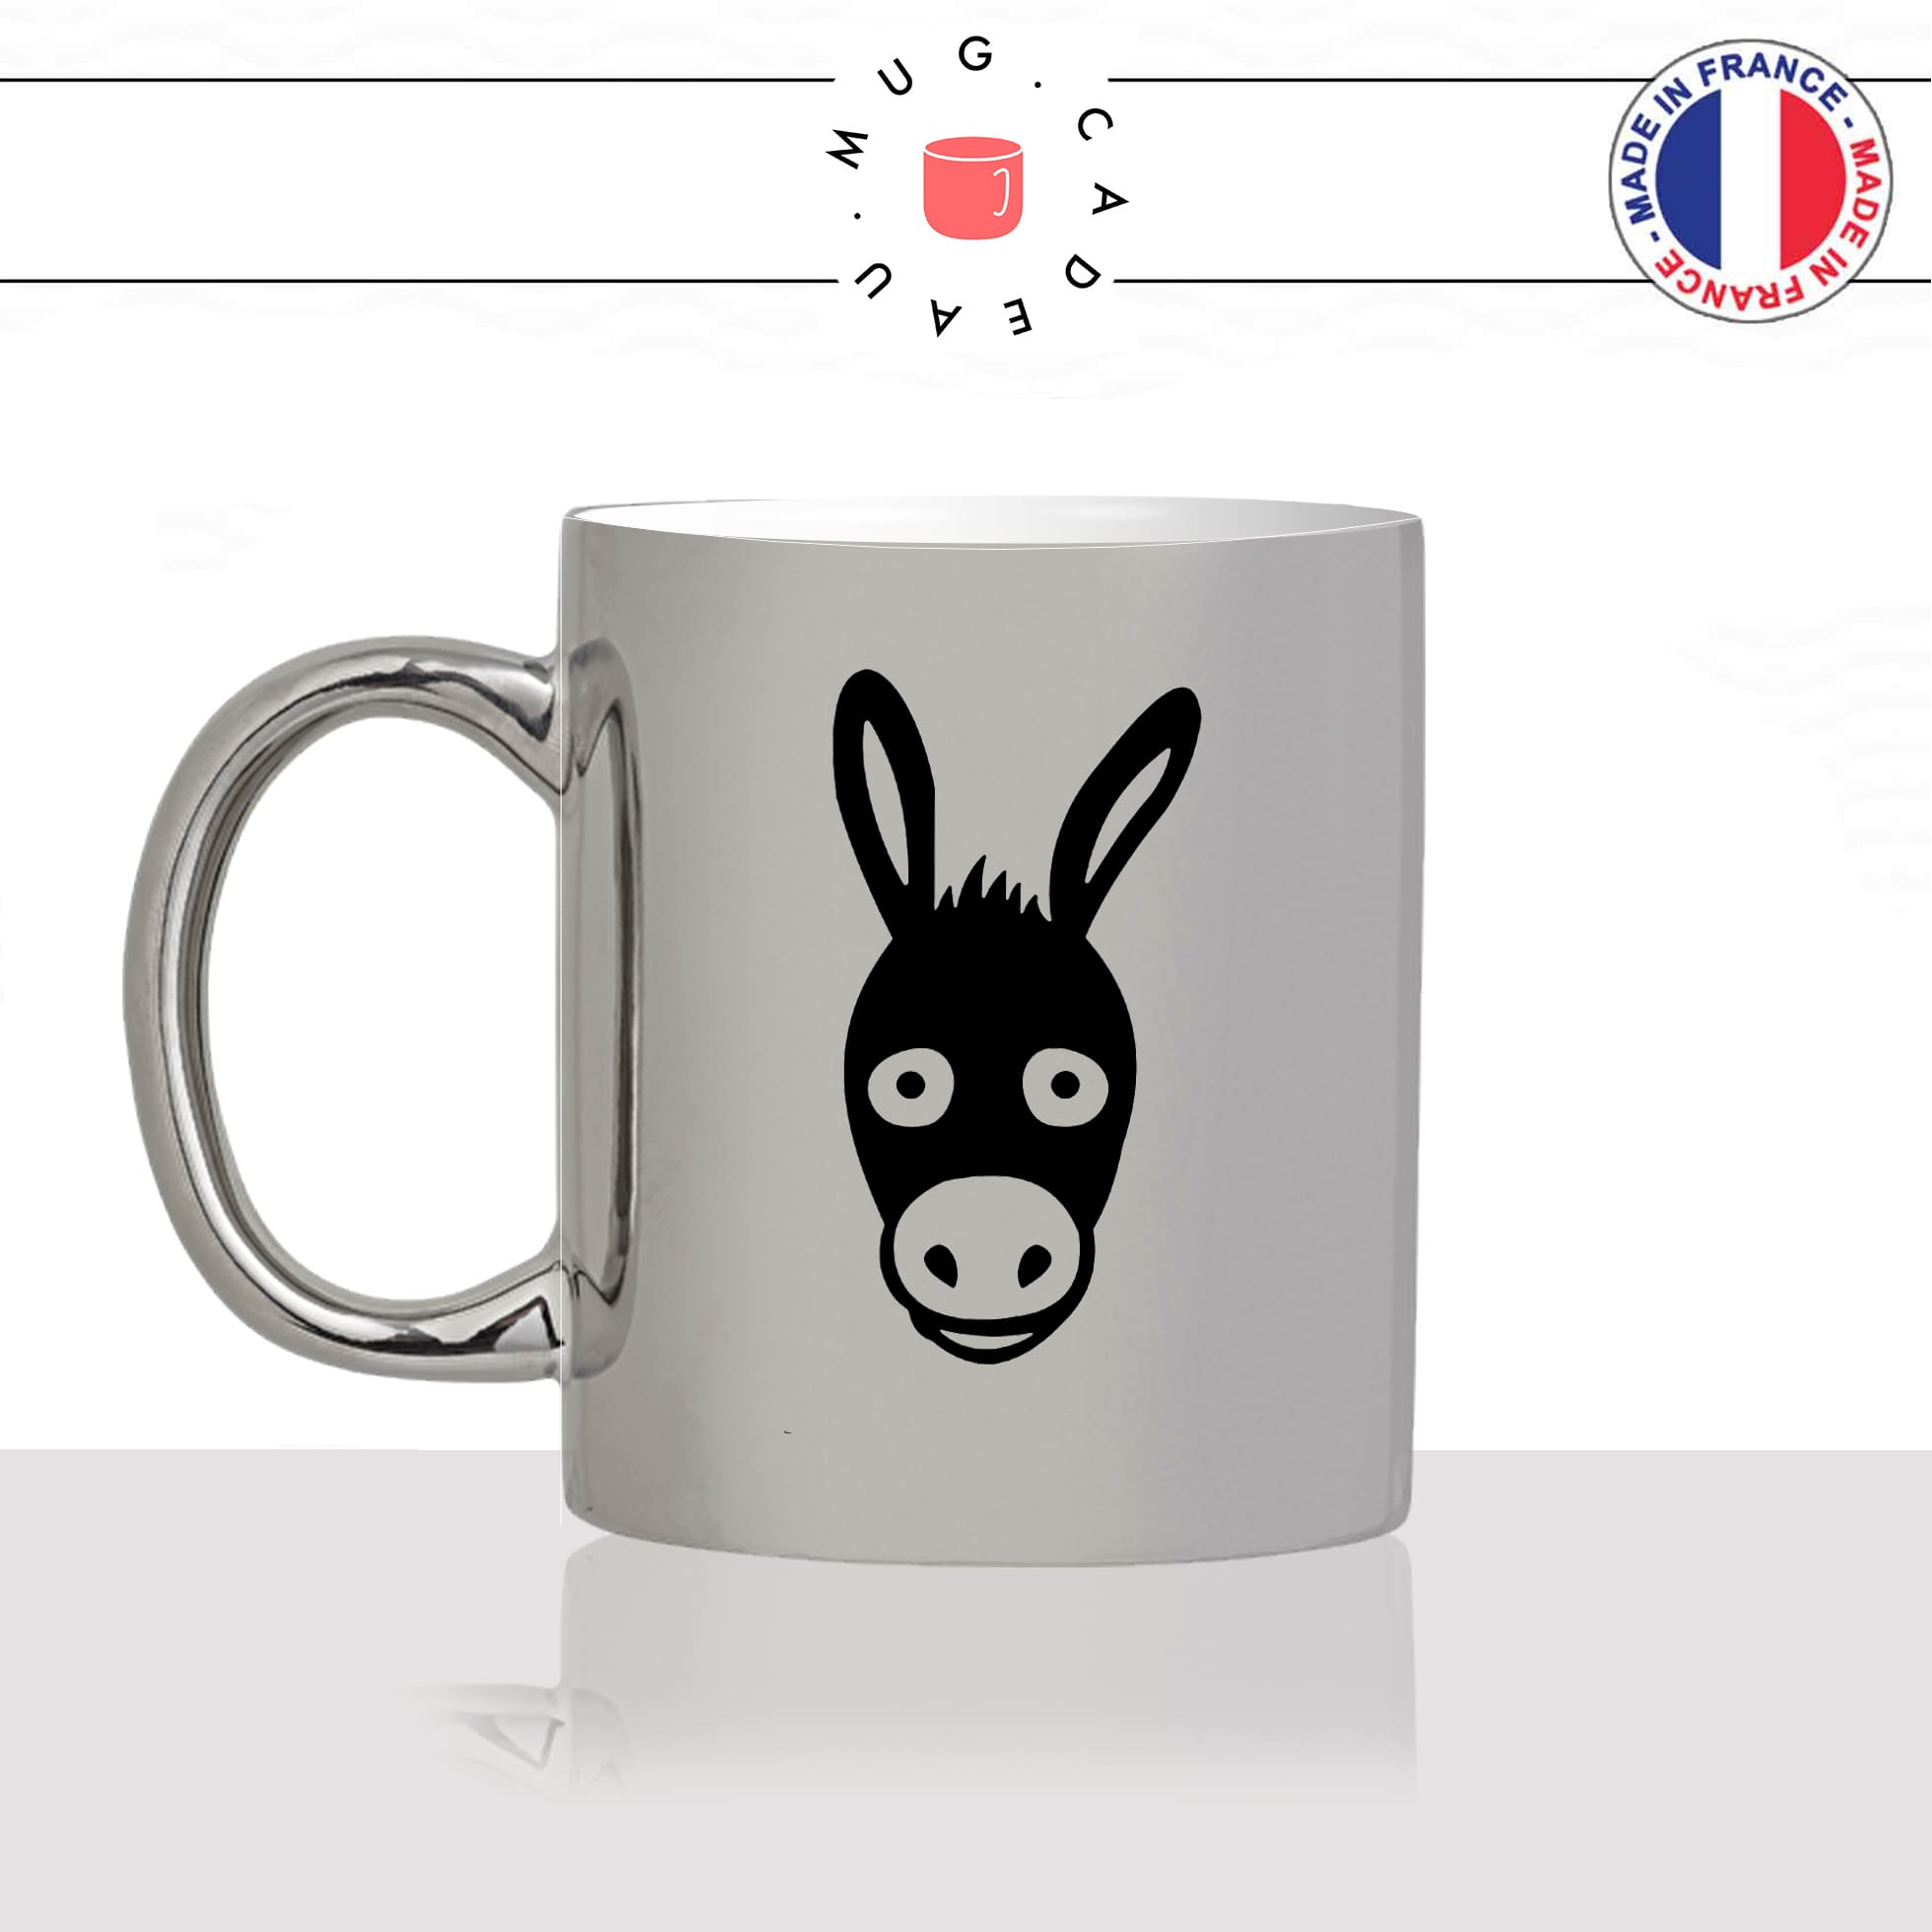 mug-tasse-argenté-argent-gris-silver-dessin-tete-de-mule-cheval-ane-expression-animaux-humour-fun-idée-cadeau-originale-cool